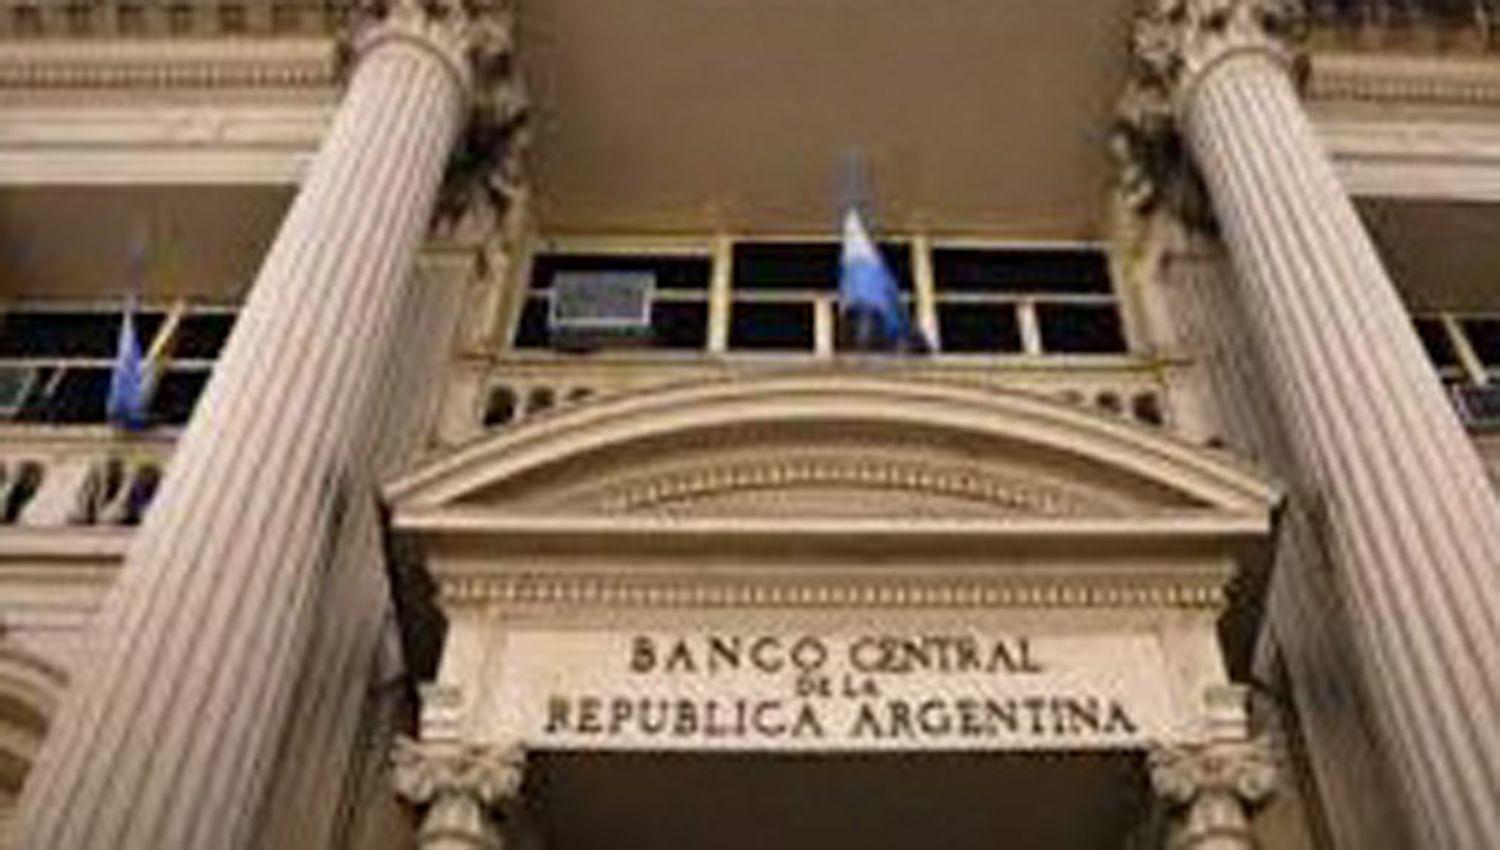 El Banco Central endurecioacute maacutes el cepo cambiario